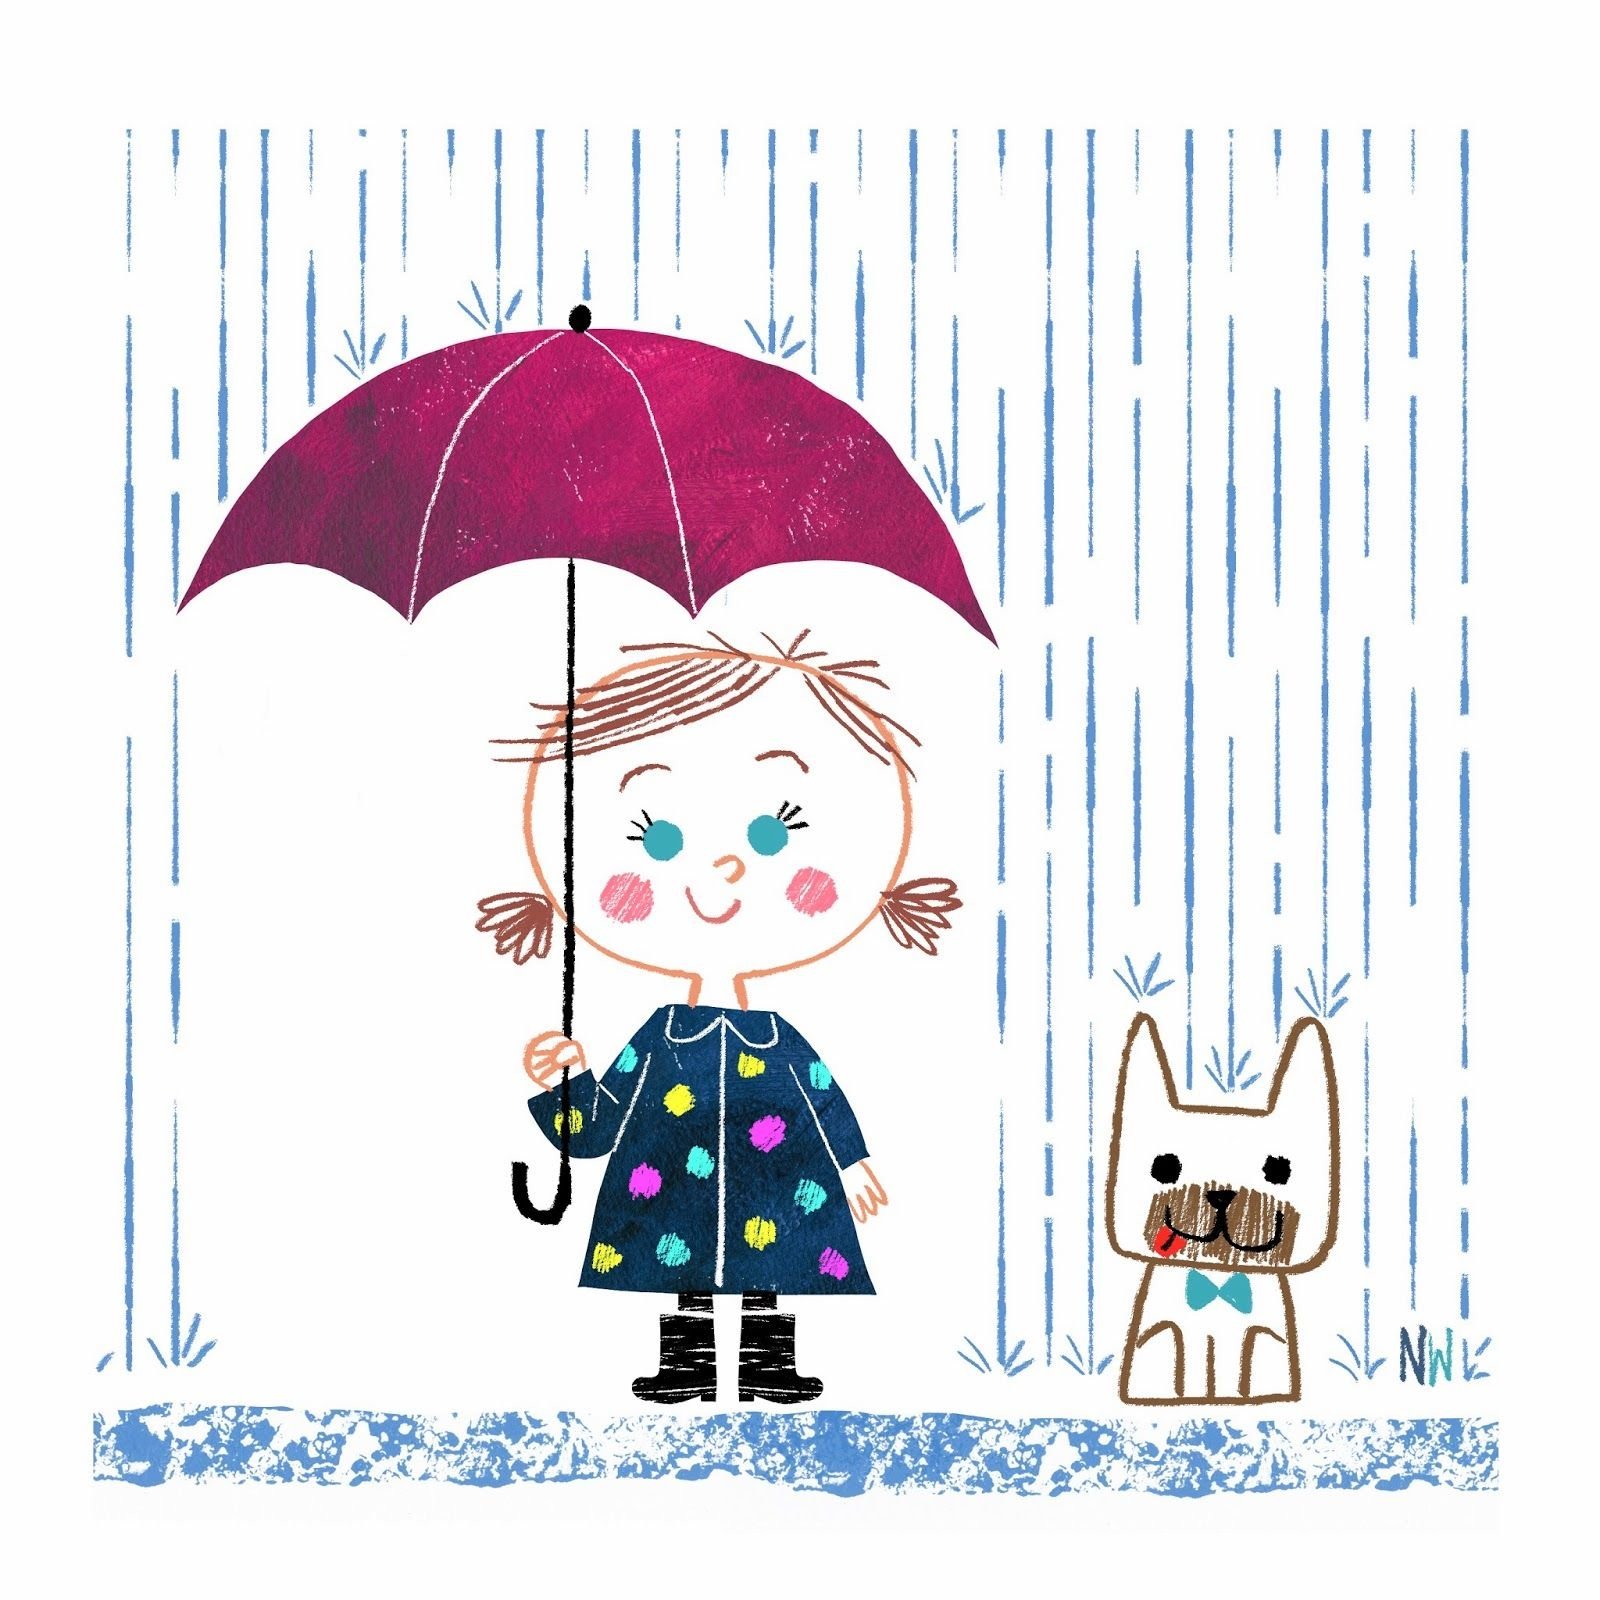 Дождик картинки для детей. Дождь рисунок. Дождик картинка для детей. Девочка под зонтиком. Дождик рисунок для детей.